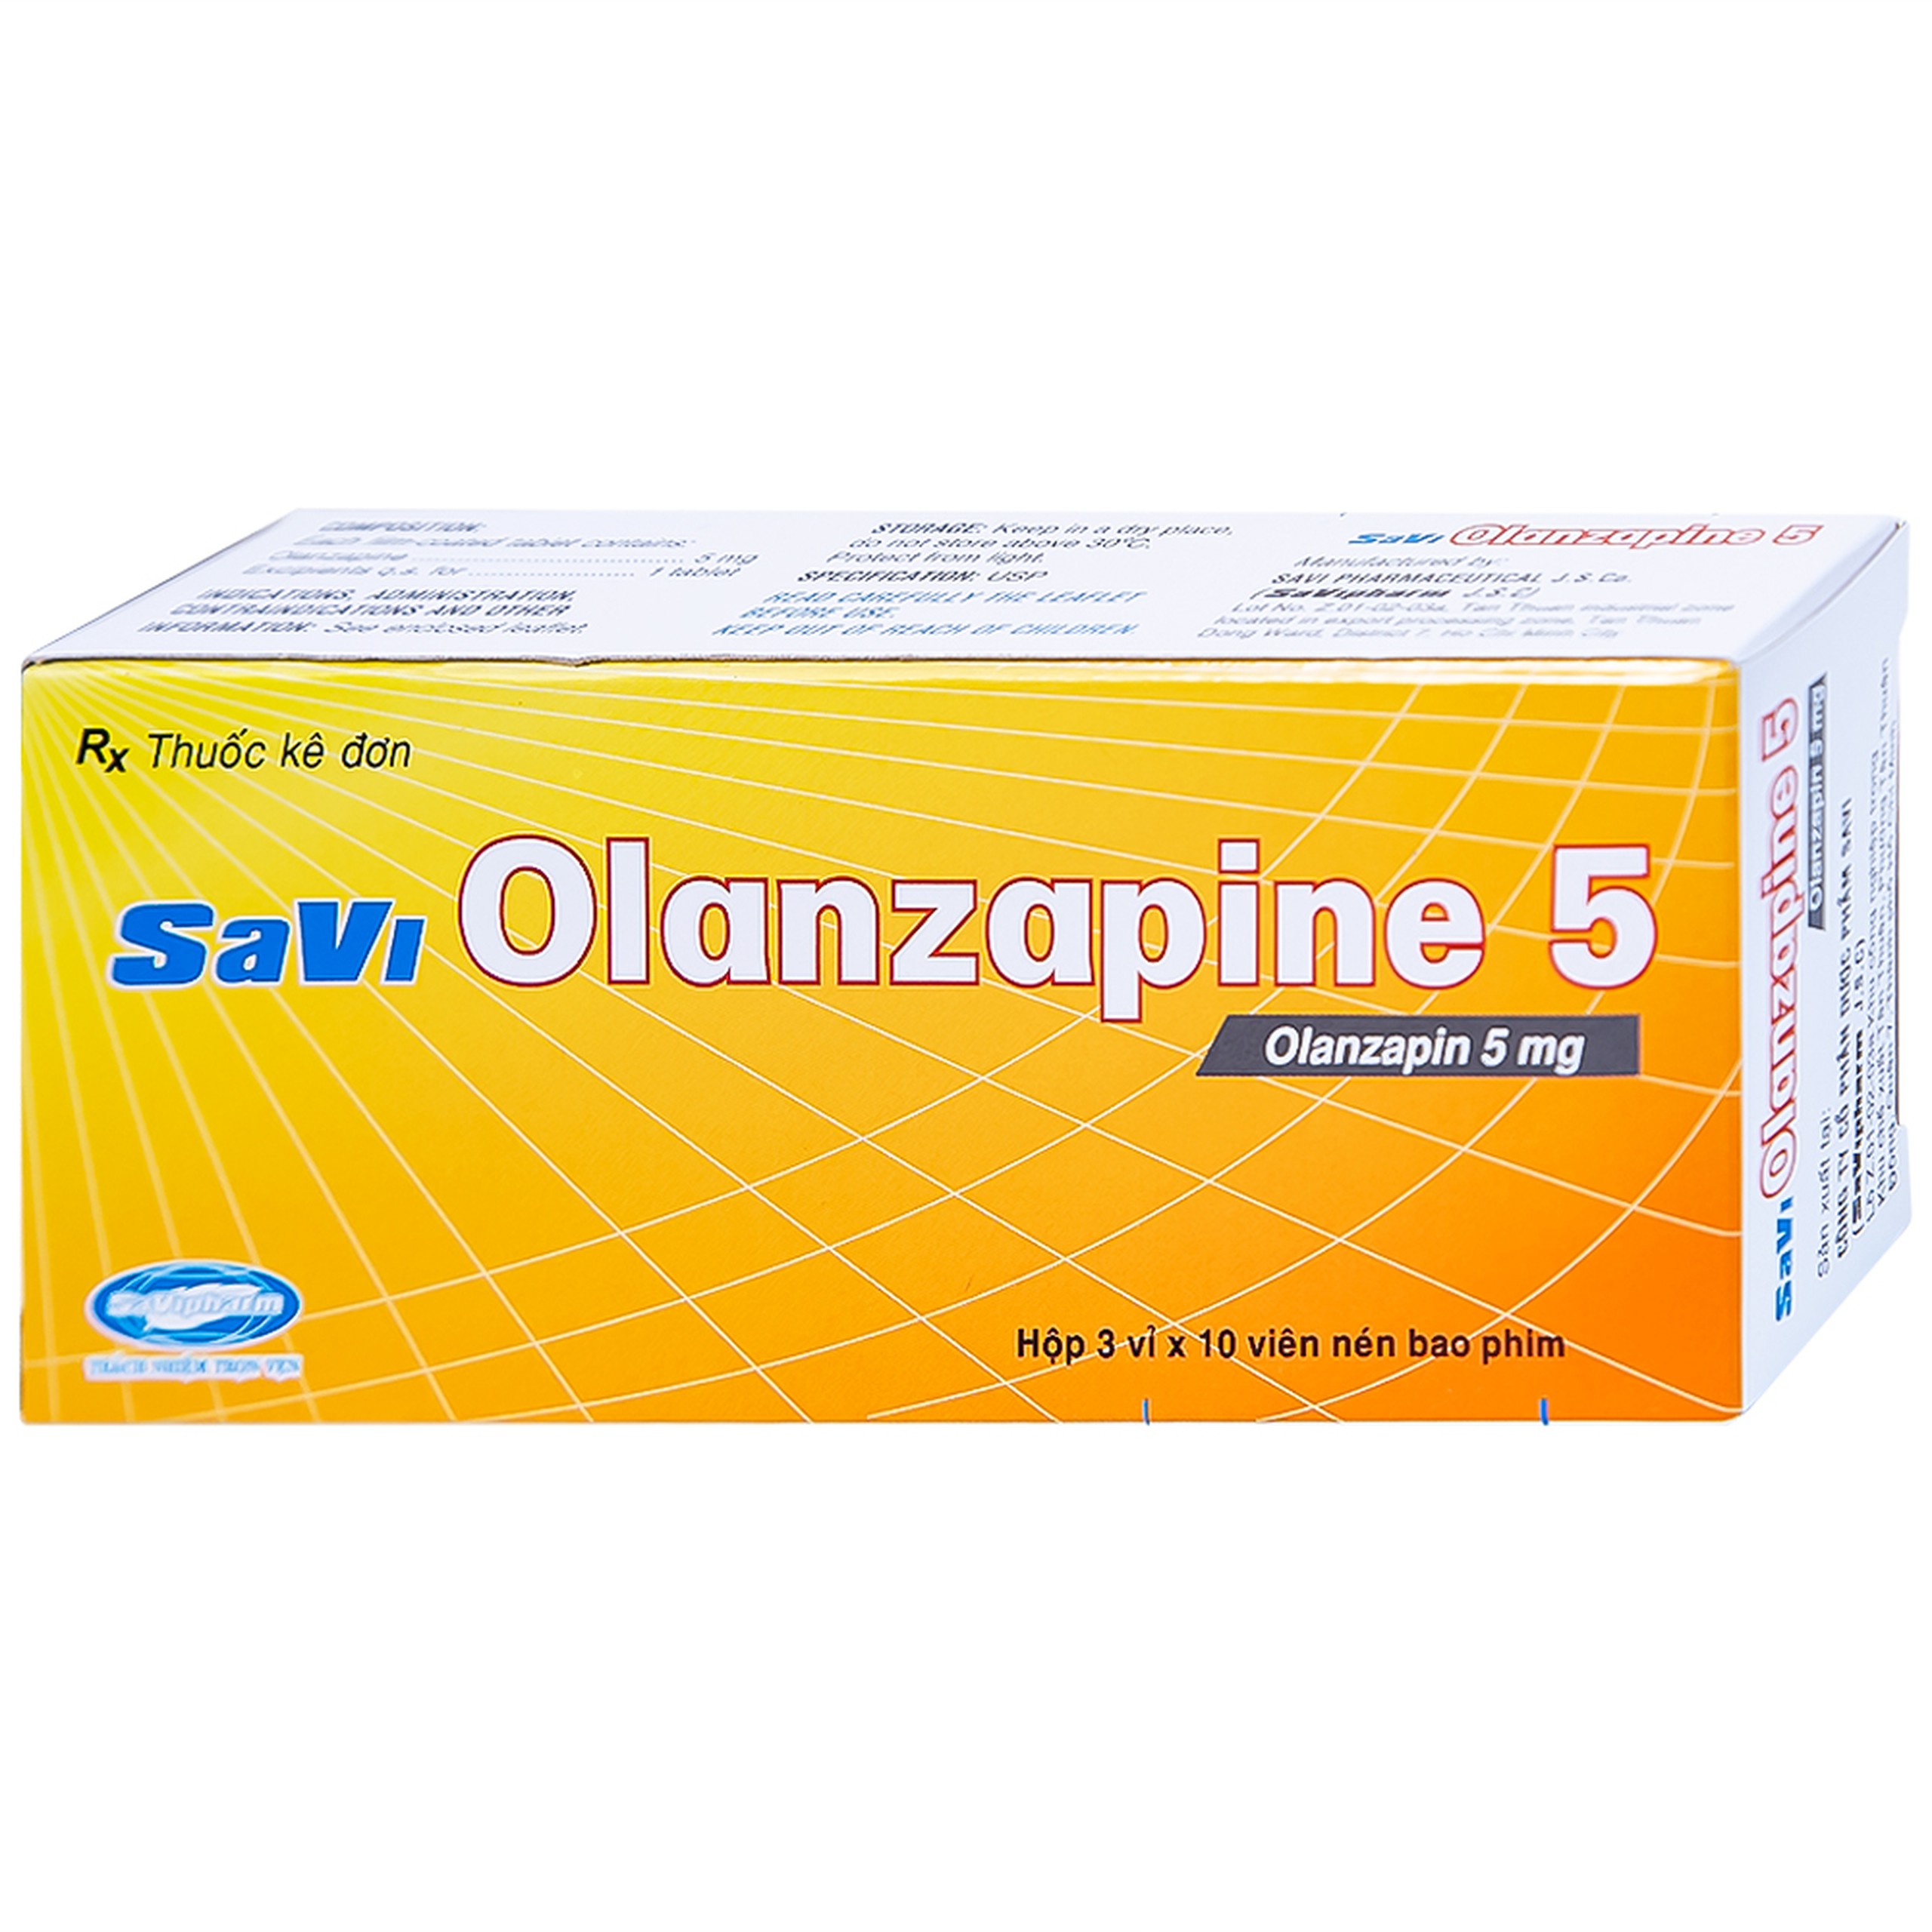 Thuốc Savi Olanzapine 5 điều trị bệnh tâm thần phân liệt (3 vỉ x 10 viên) 